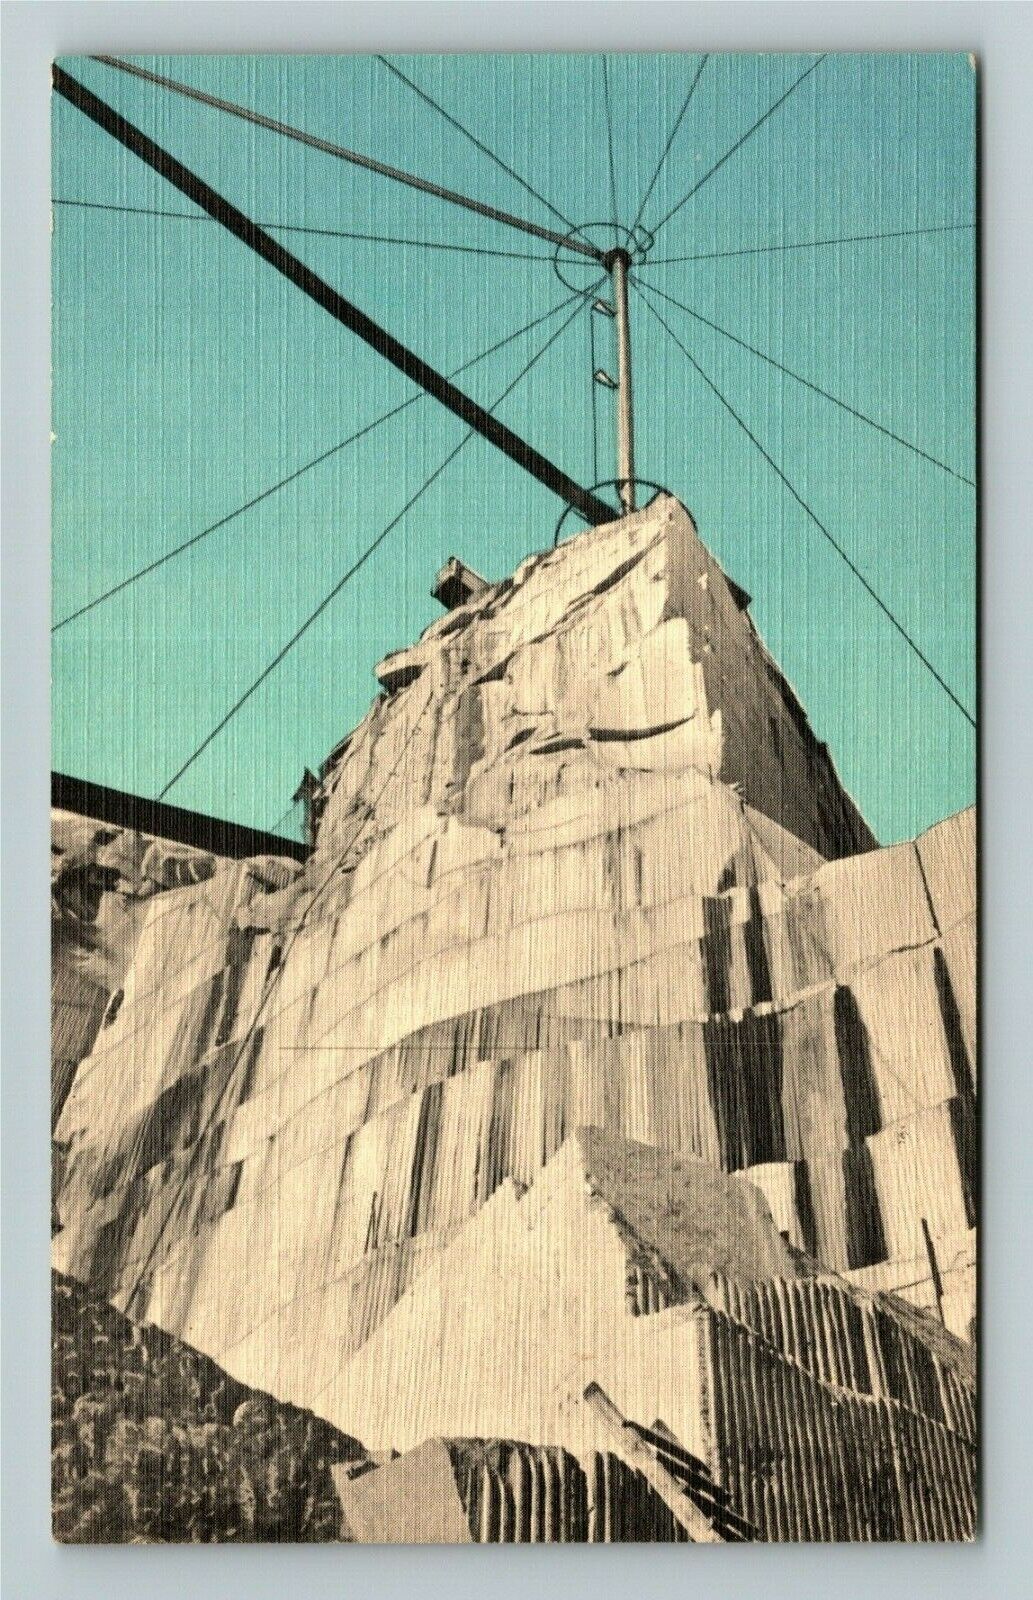 Barre VT-Vermont, Rock Ages Granite Quarry, Exterior, Vintage Postcard